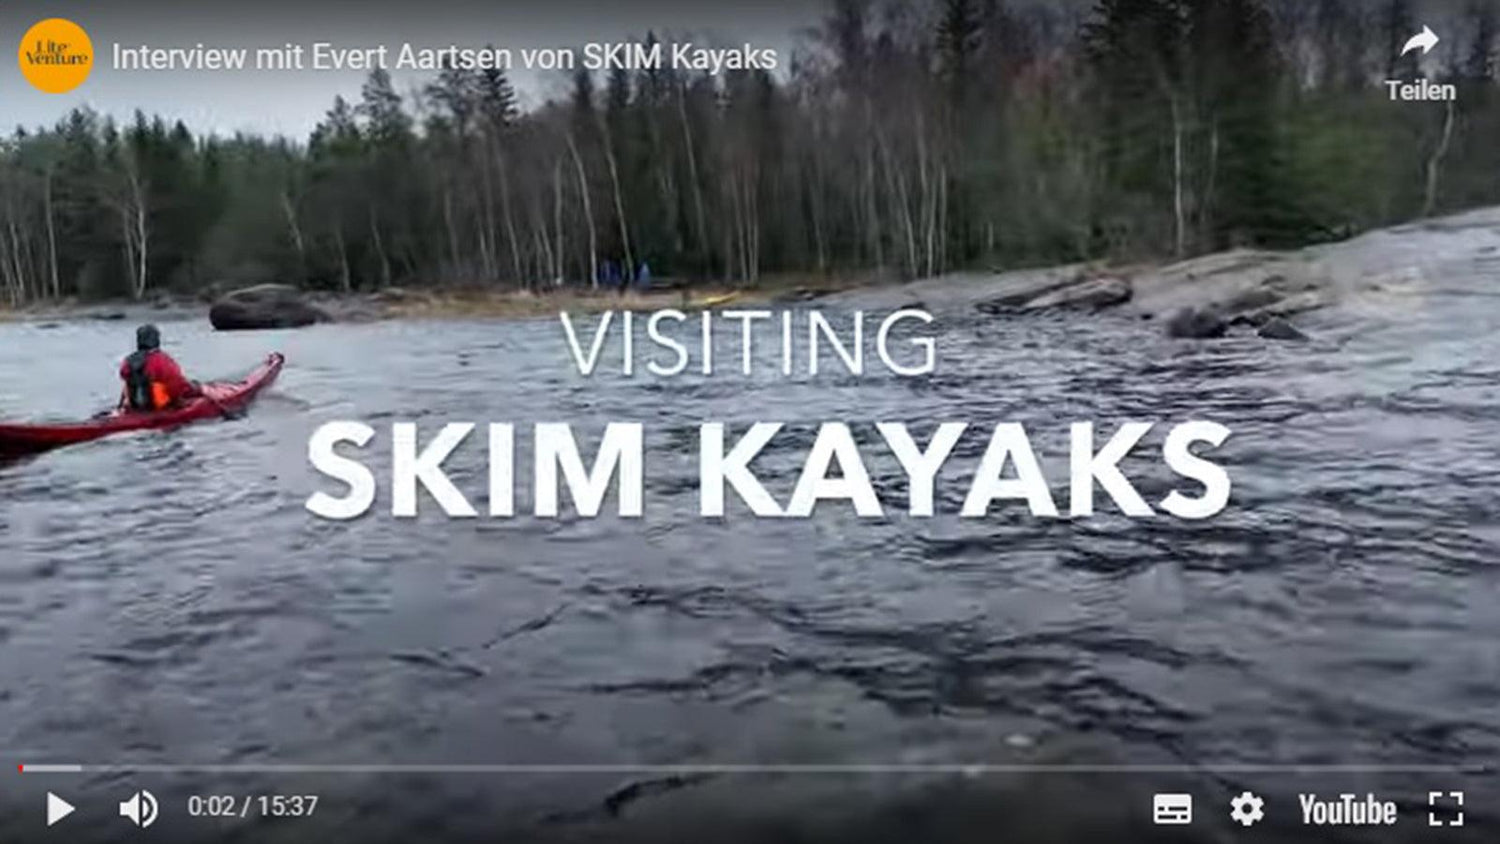 Titelbild zu " Interview mit Evert Aartsen von SKIM Kayaks in Finnland " auf Lite Venture ( www.liteventure.de )